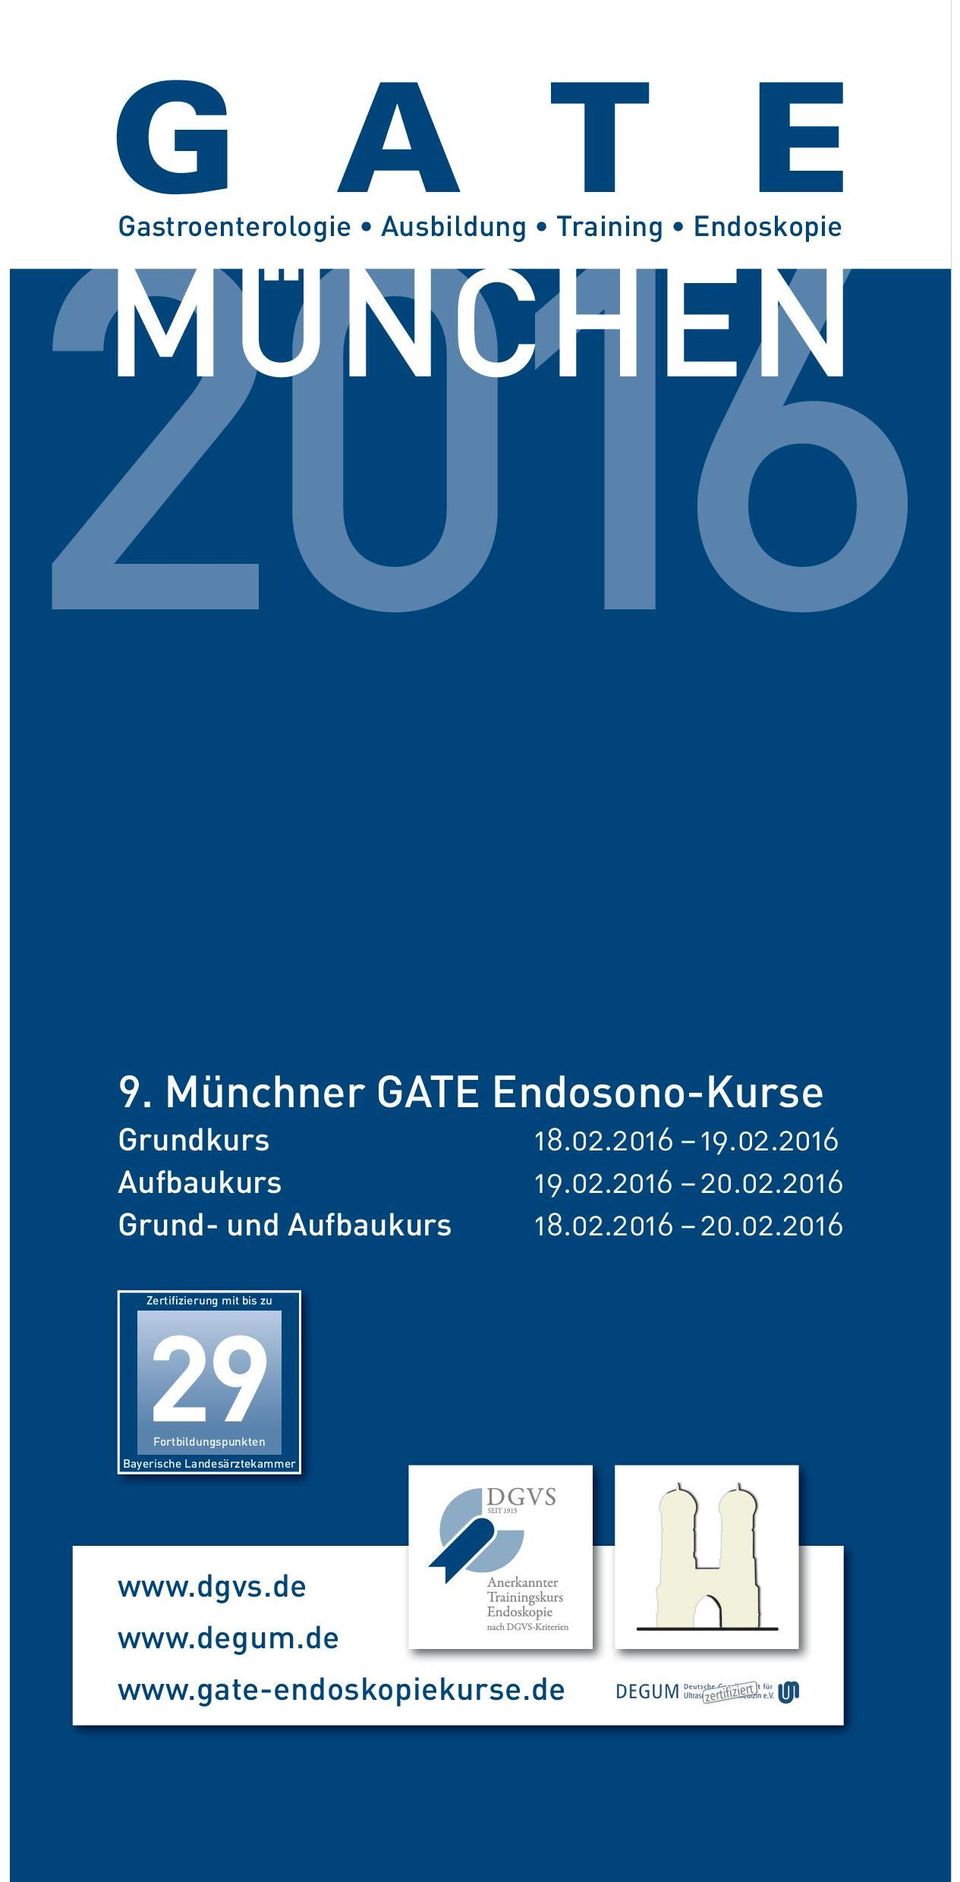 02.2016 Grund- und Aufbaukurs 18.02.2016 20.02.2016 Zertifizierung mit bis zu 29 www.